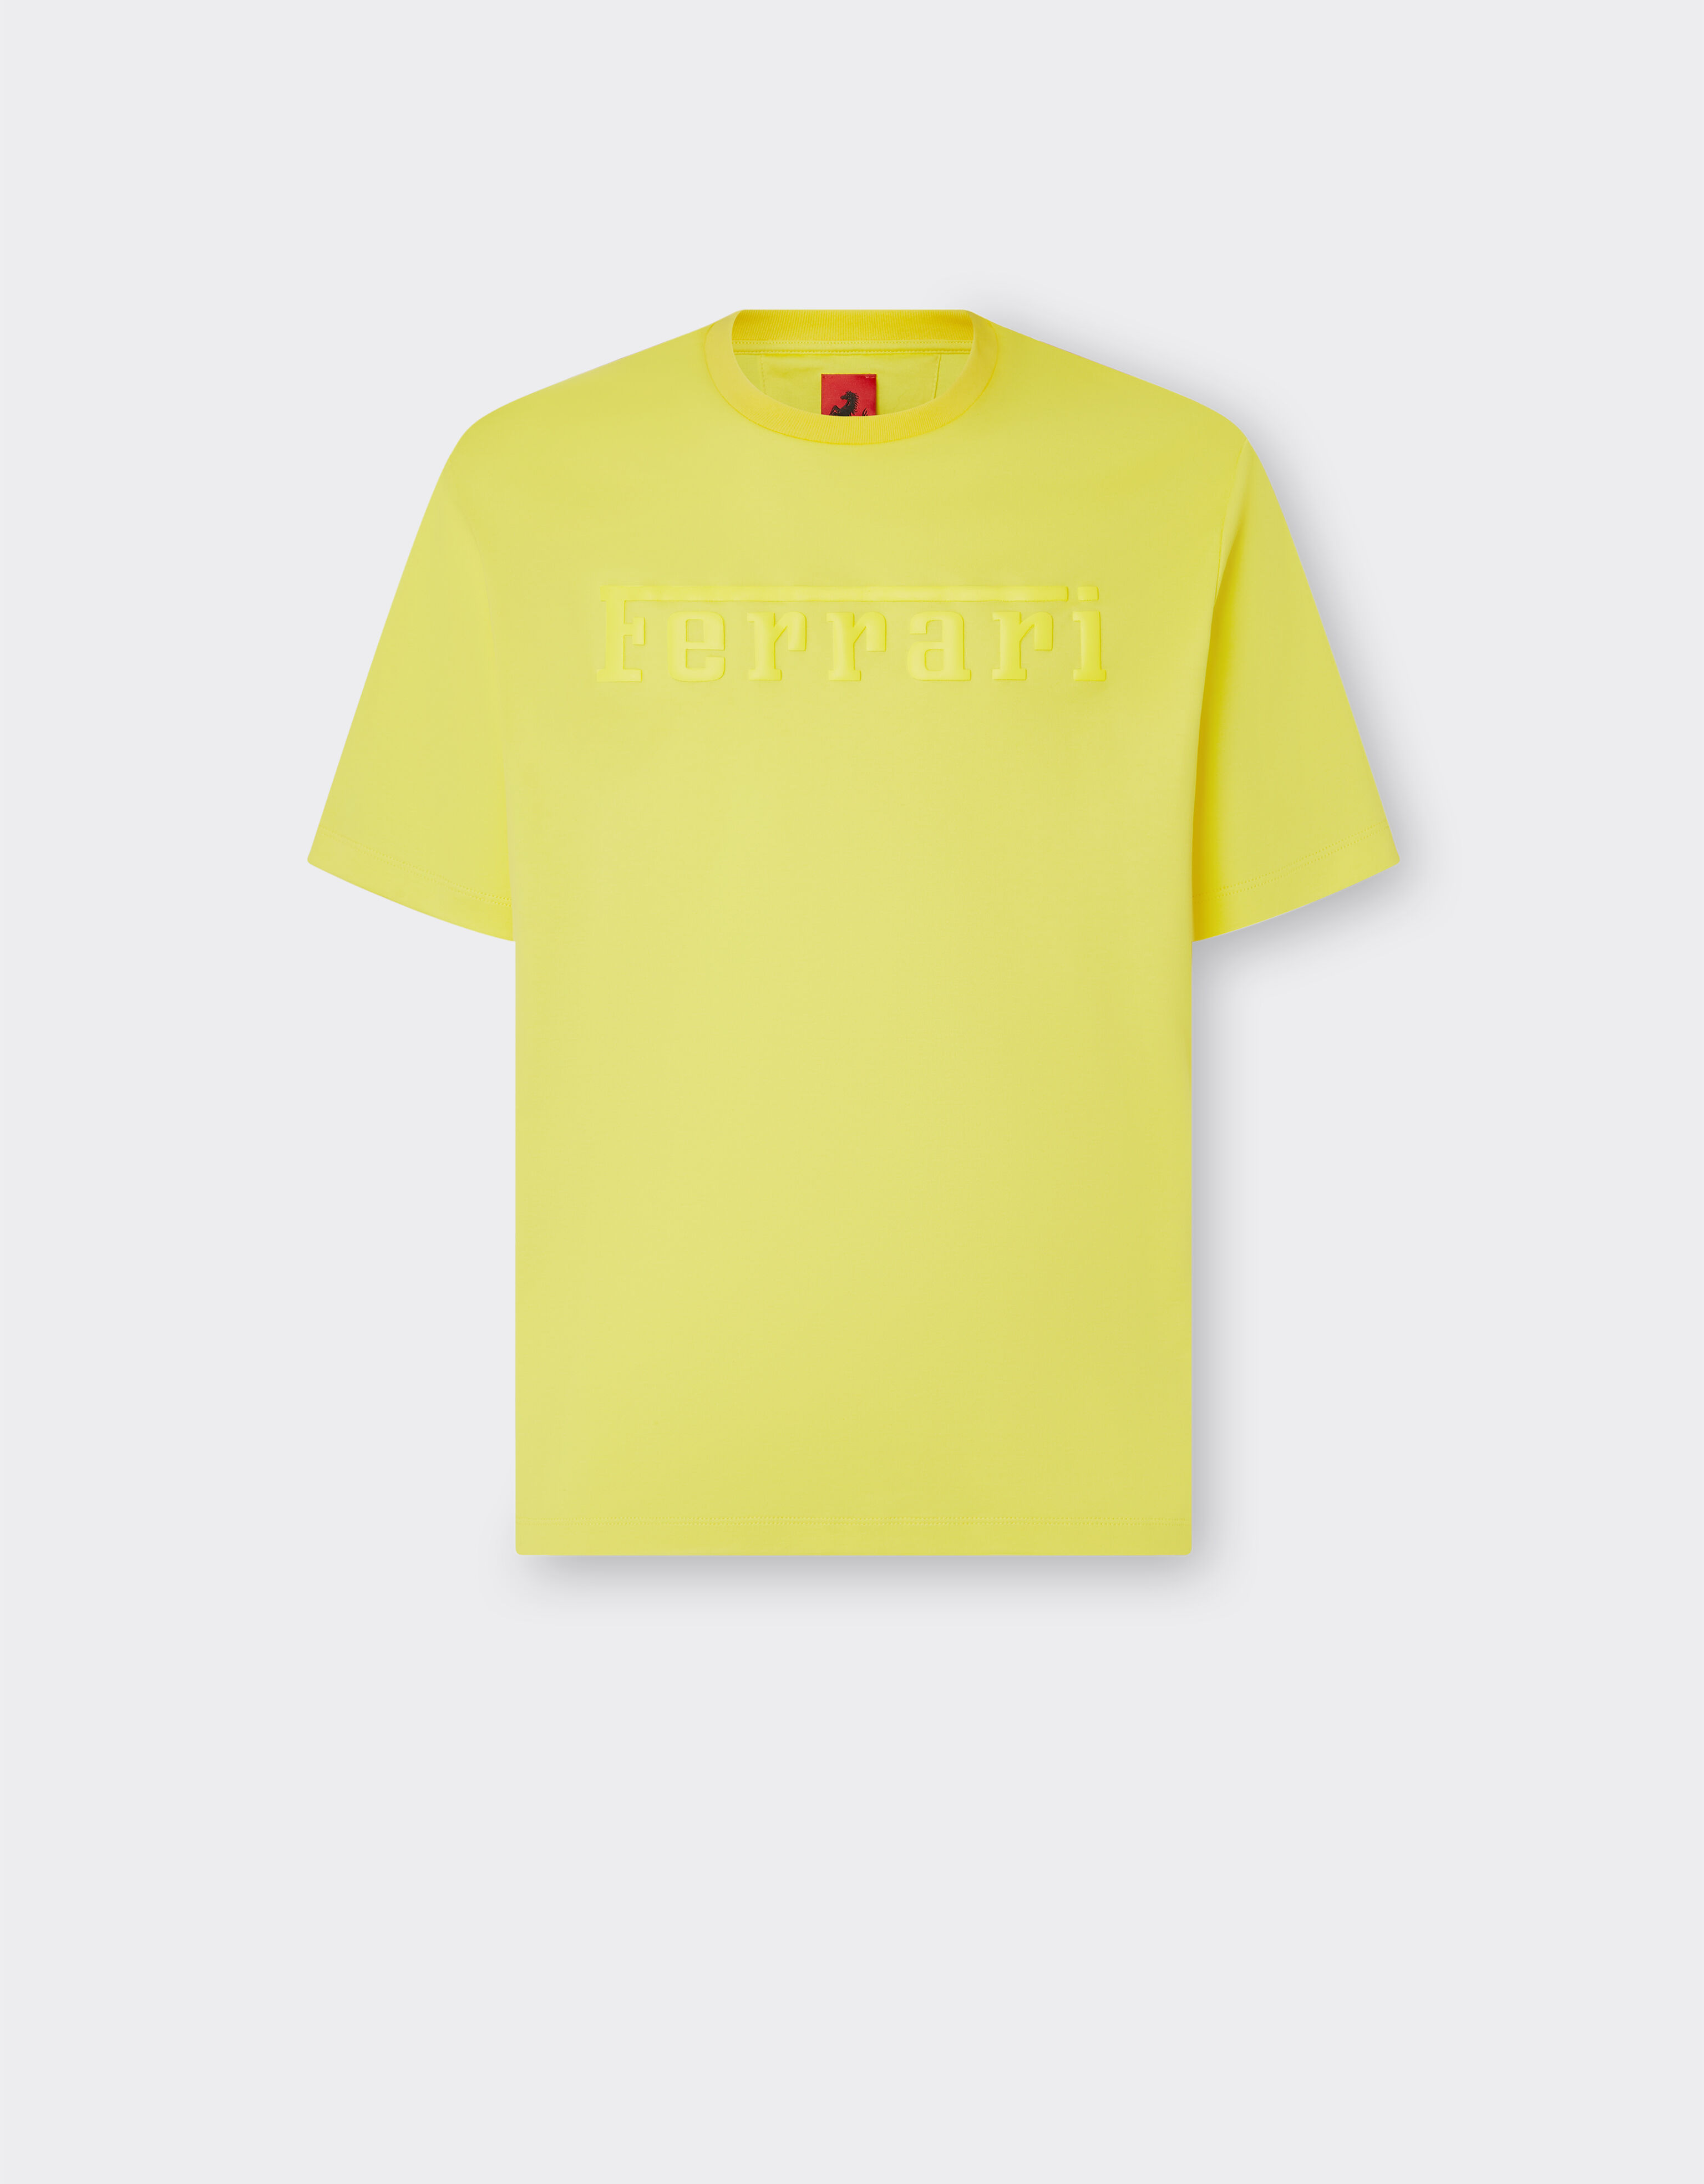 Ferrari T-shirt in cotone con logo Ferrari Giallo Modena 48115f